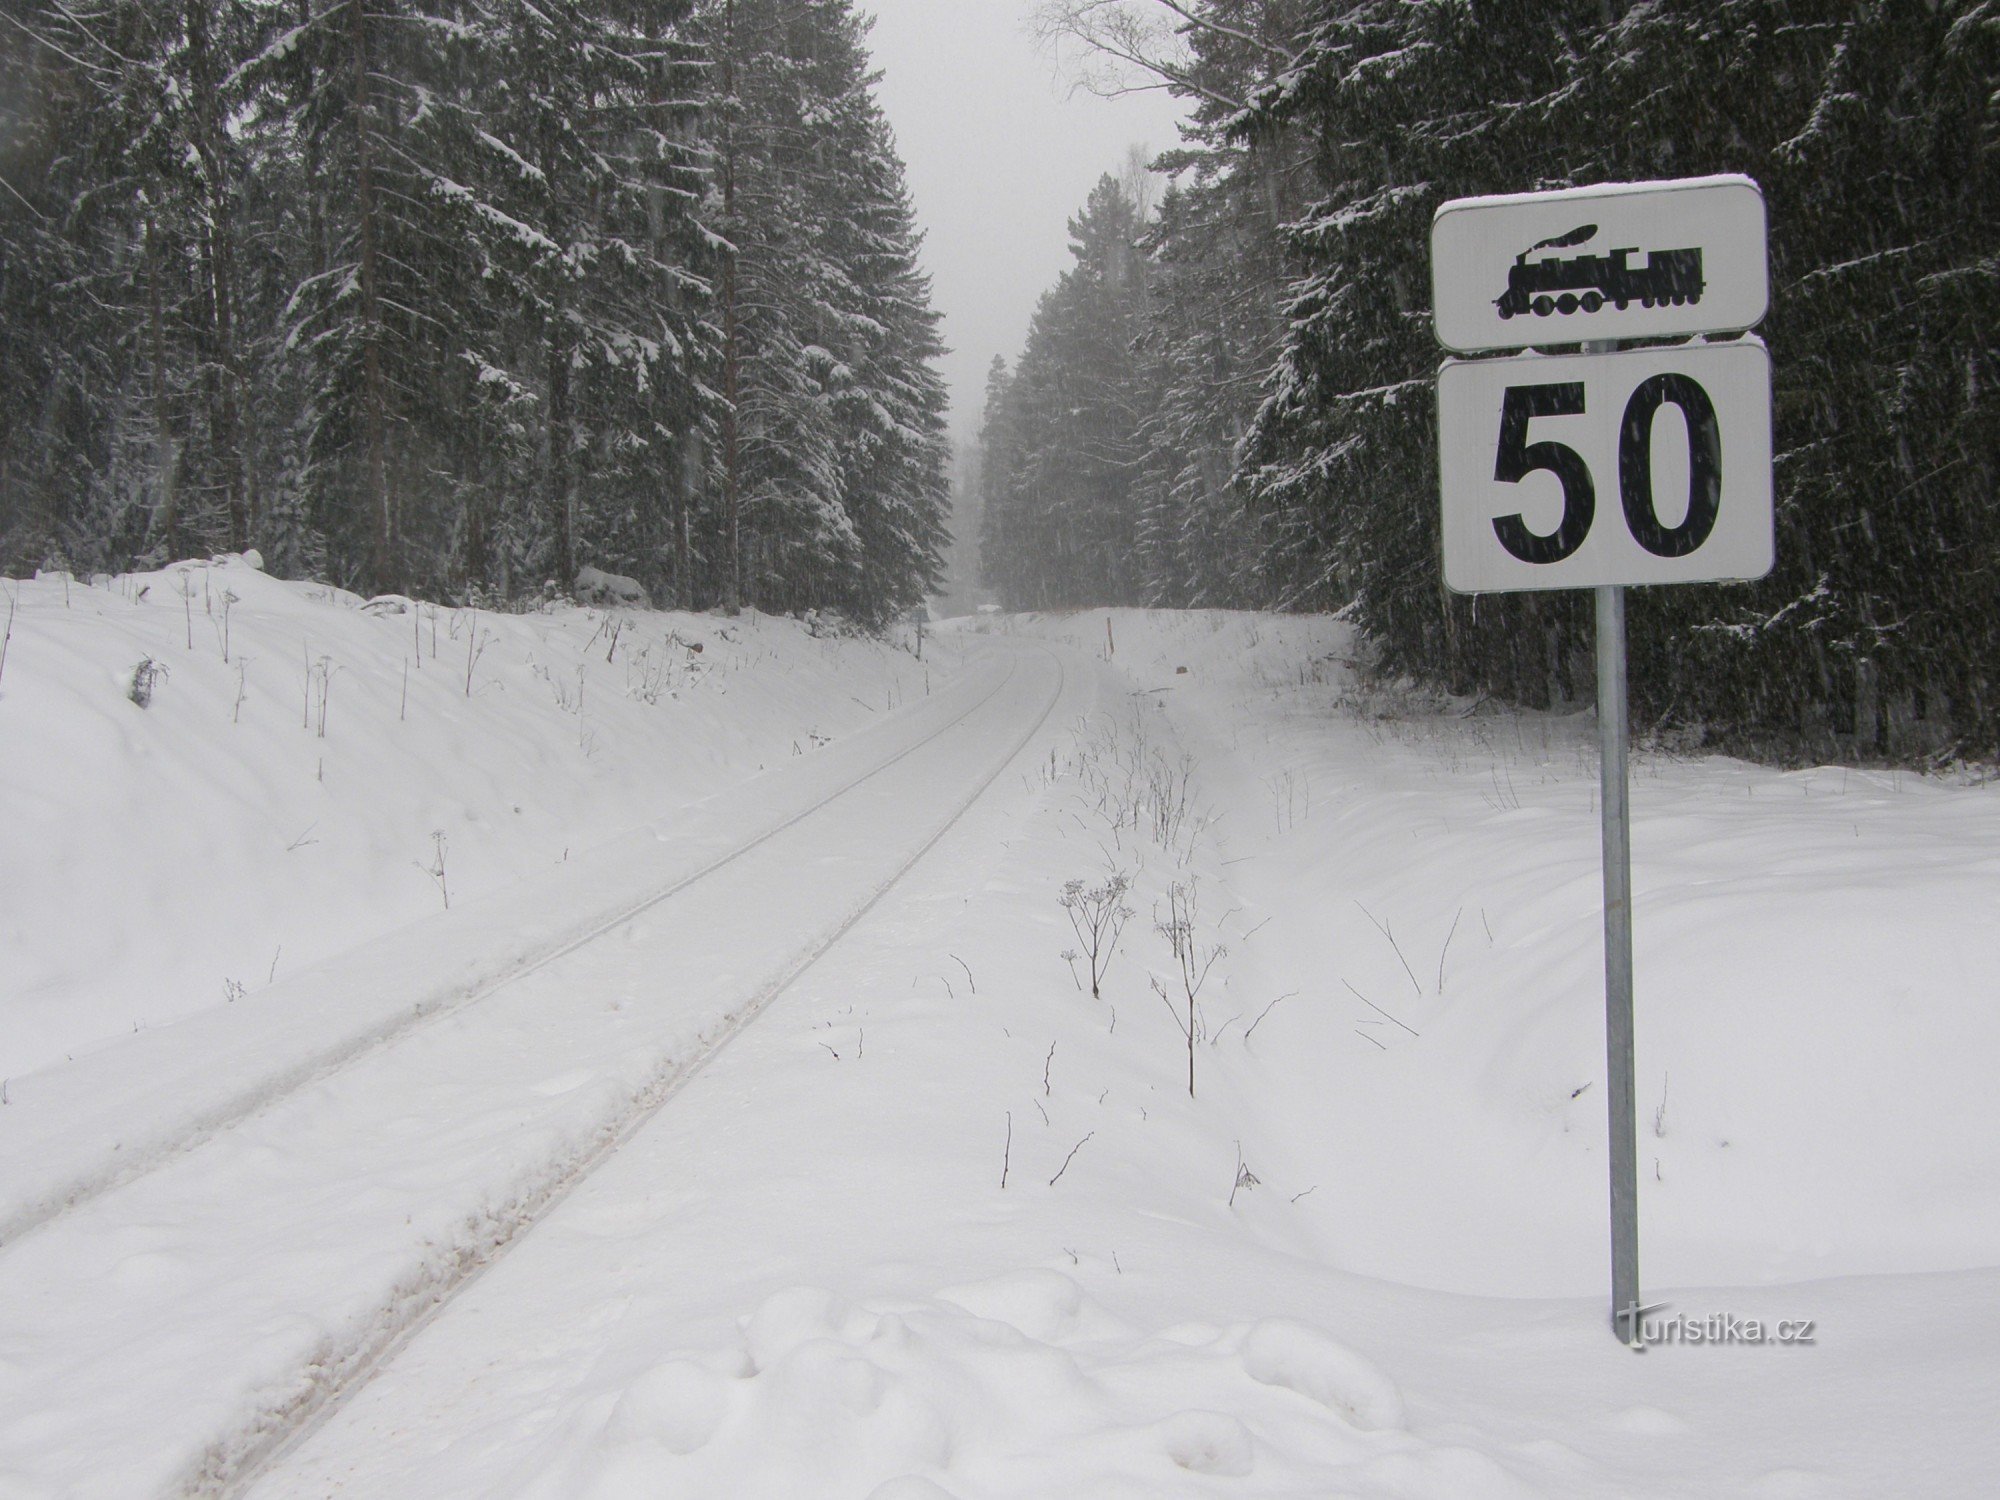 Đường ray xuyên qua tuyết về phía biên giới Bavaria